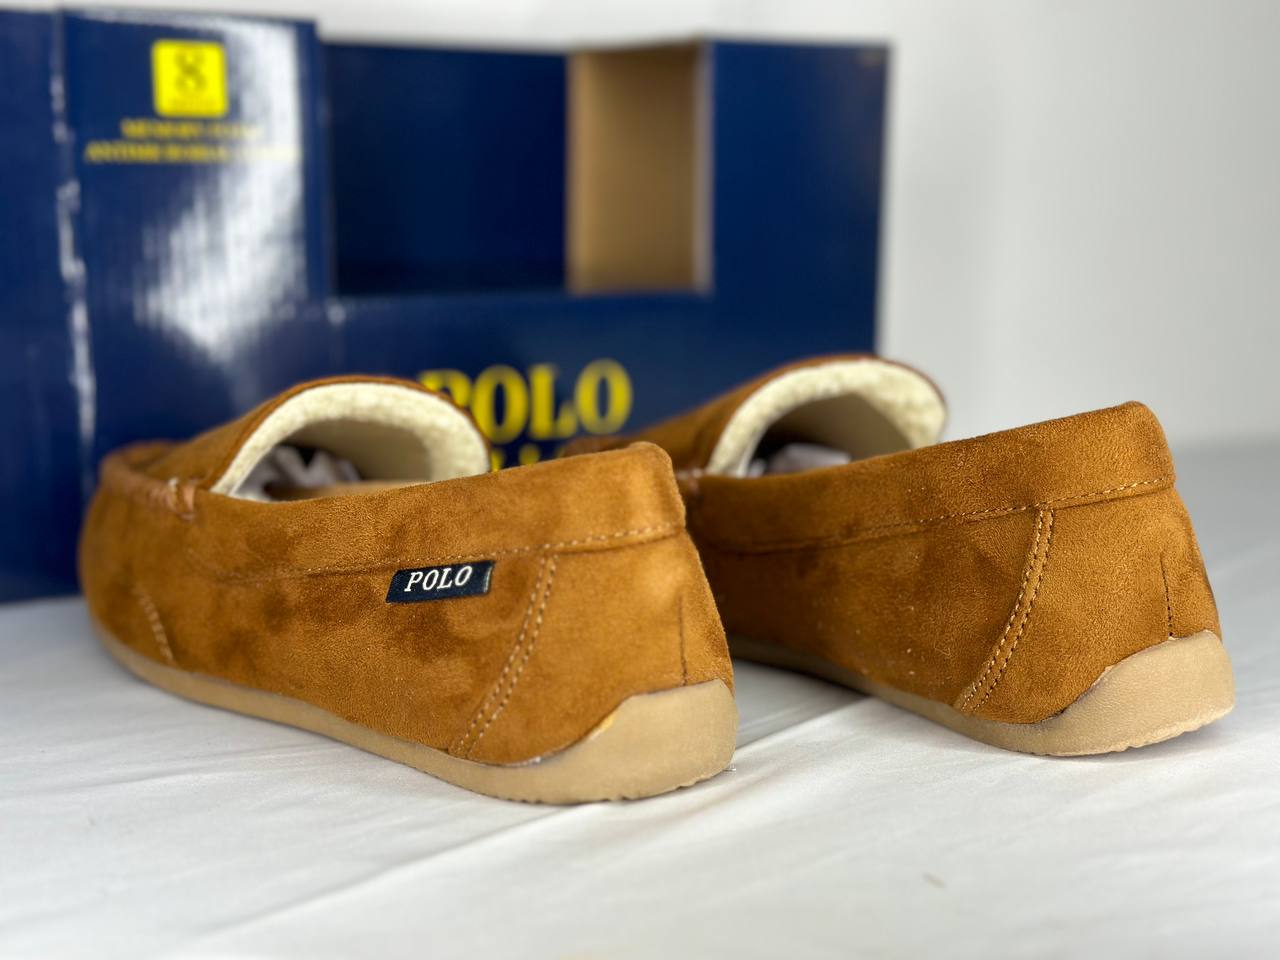 Ralph Lauren polo shoes